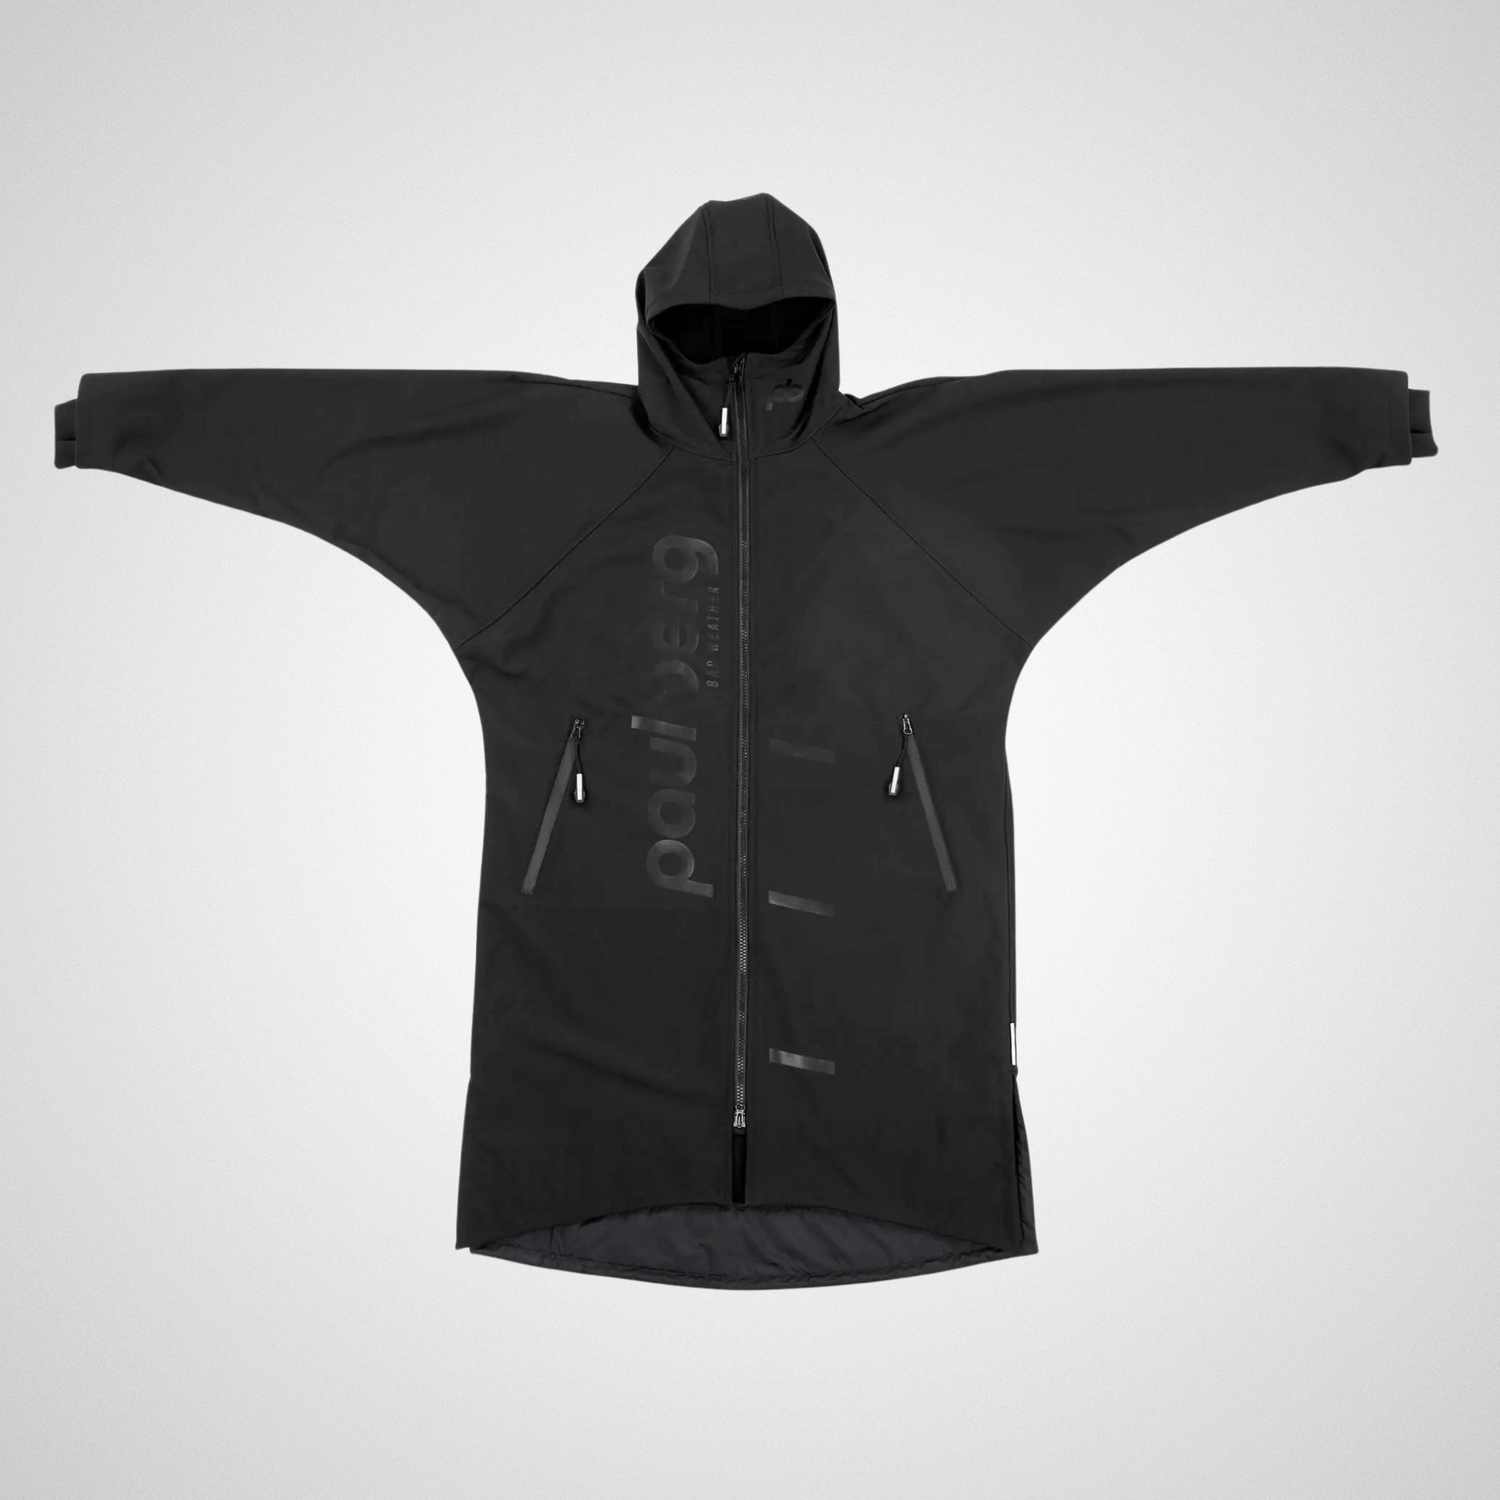 Paul Berg - Light Outdoor vaatteidenvaihto takki - välikausi - musta